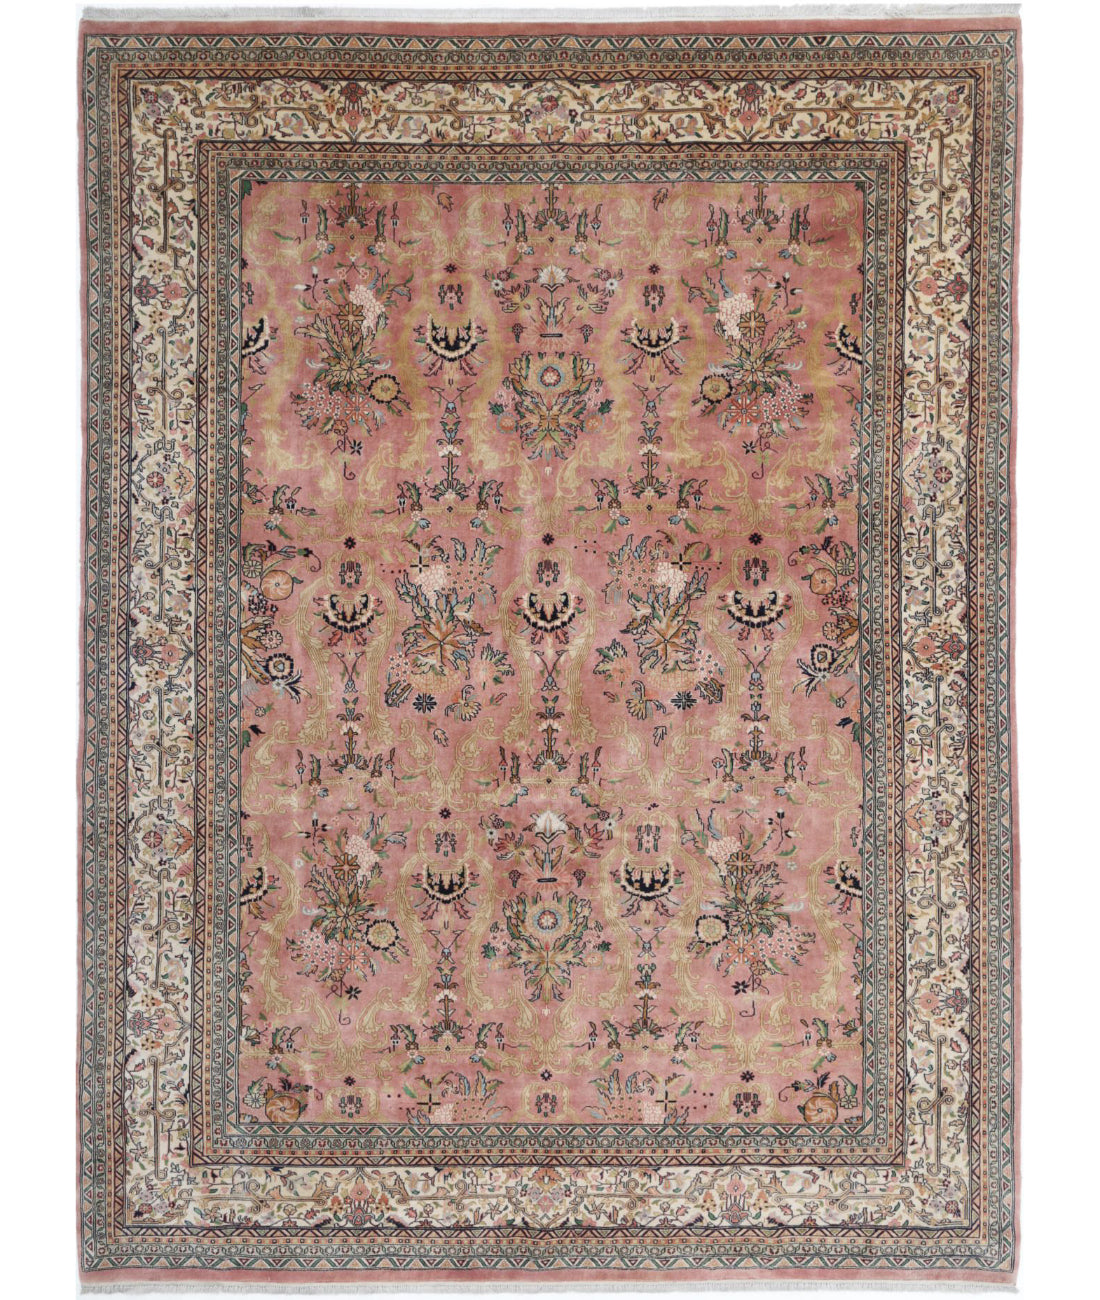 Hand Knotted Persian Bijar Wool Rug - 8'4'' x 11'2'' 8'4'' x 11'2'' (250 X 335) / Rust / Ivory